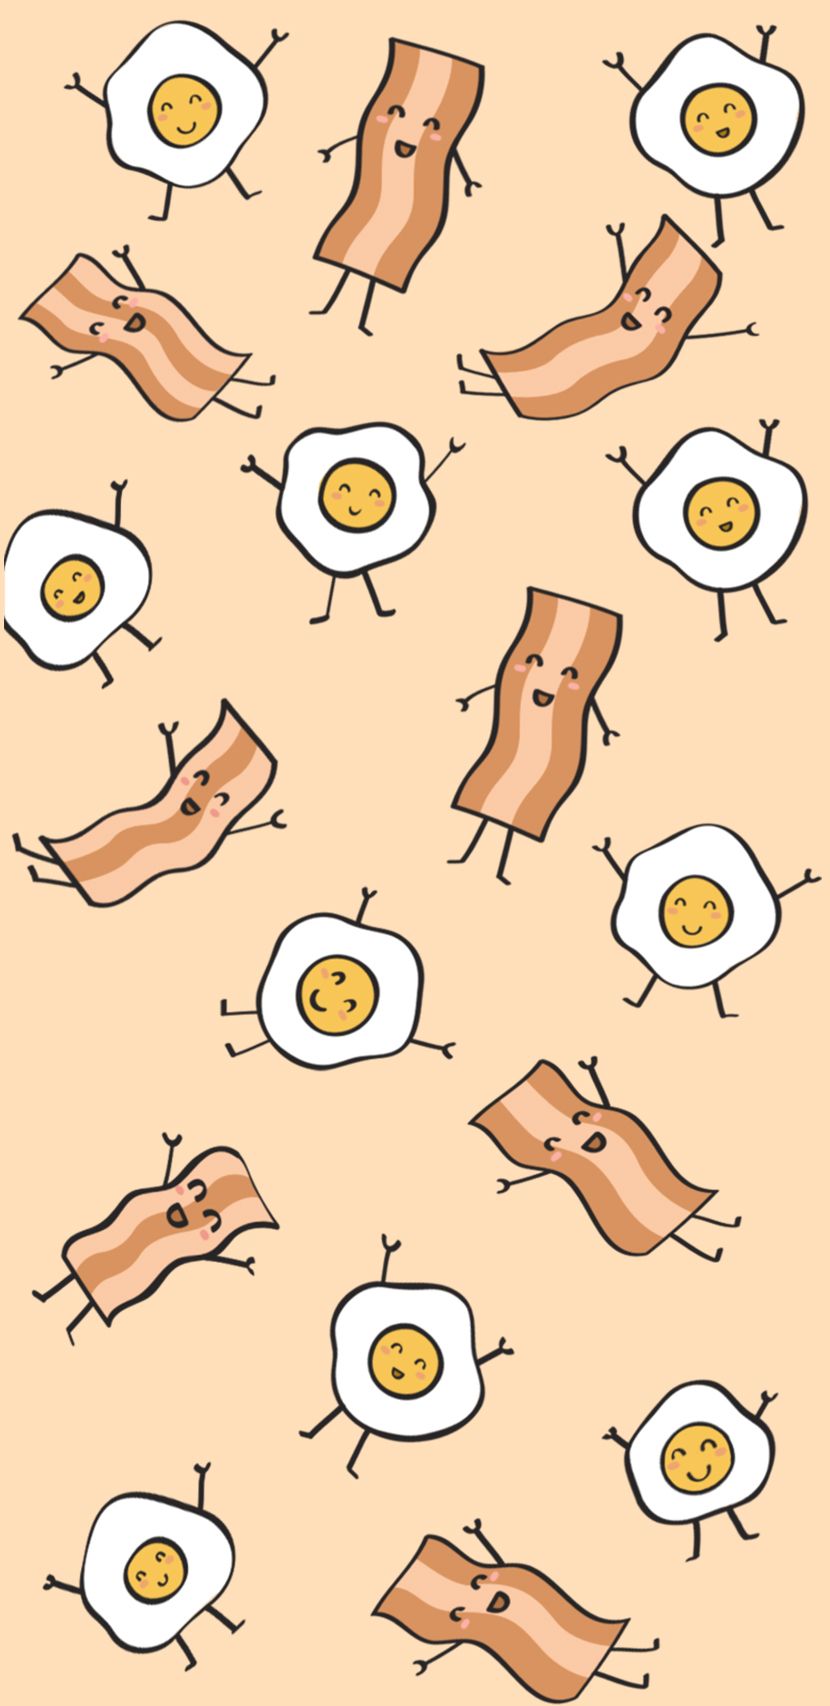 breakfast, eggs, bacon, food, food lovers, pastel colors